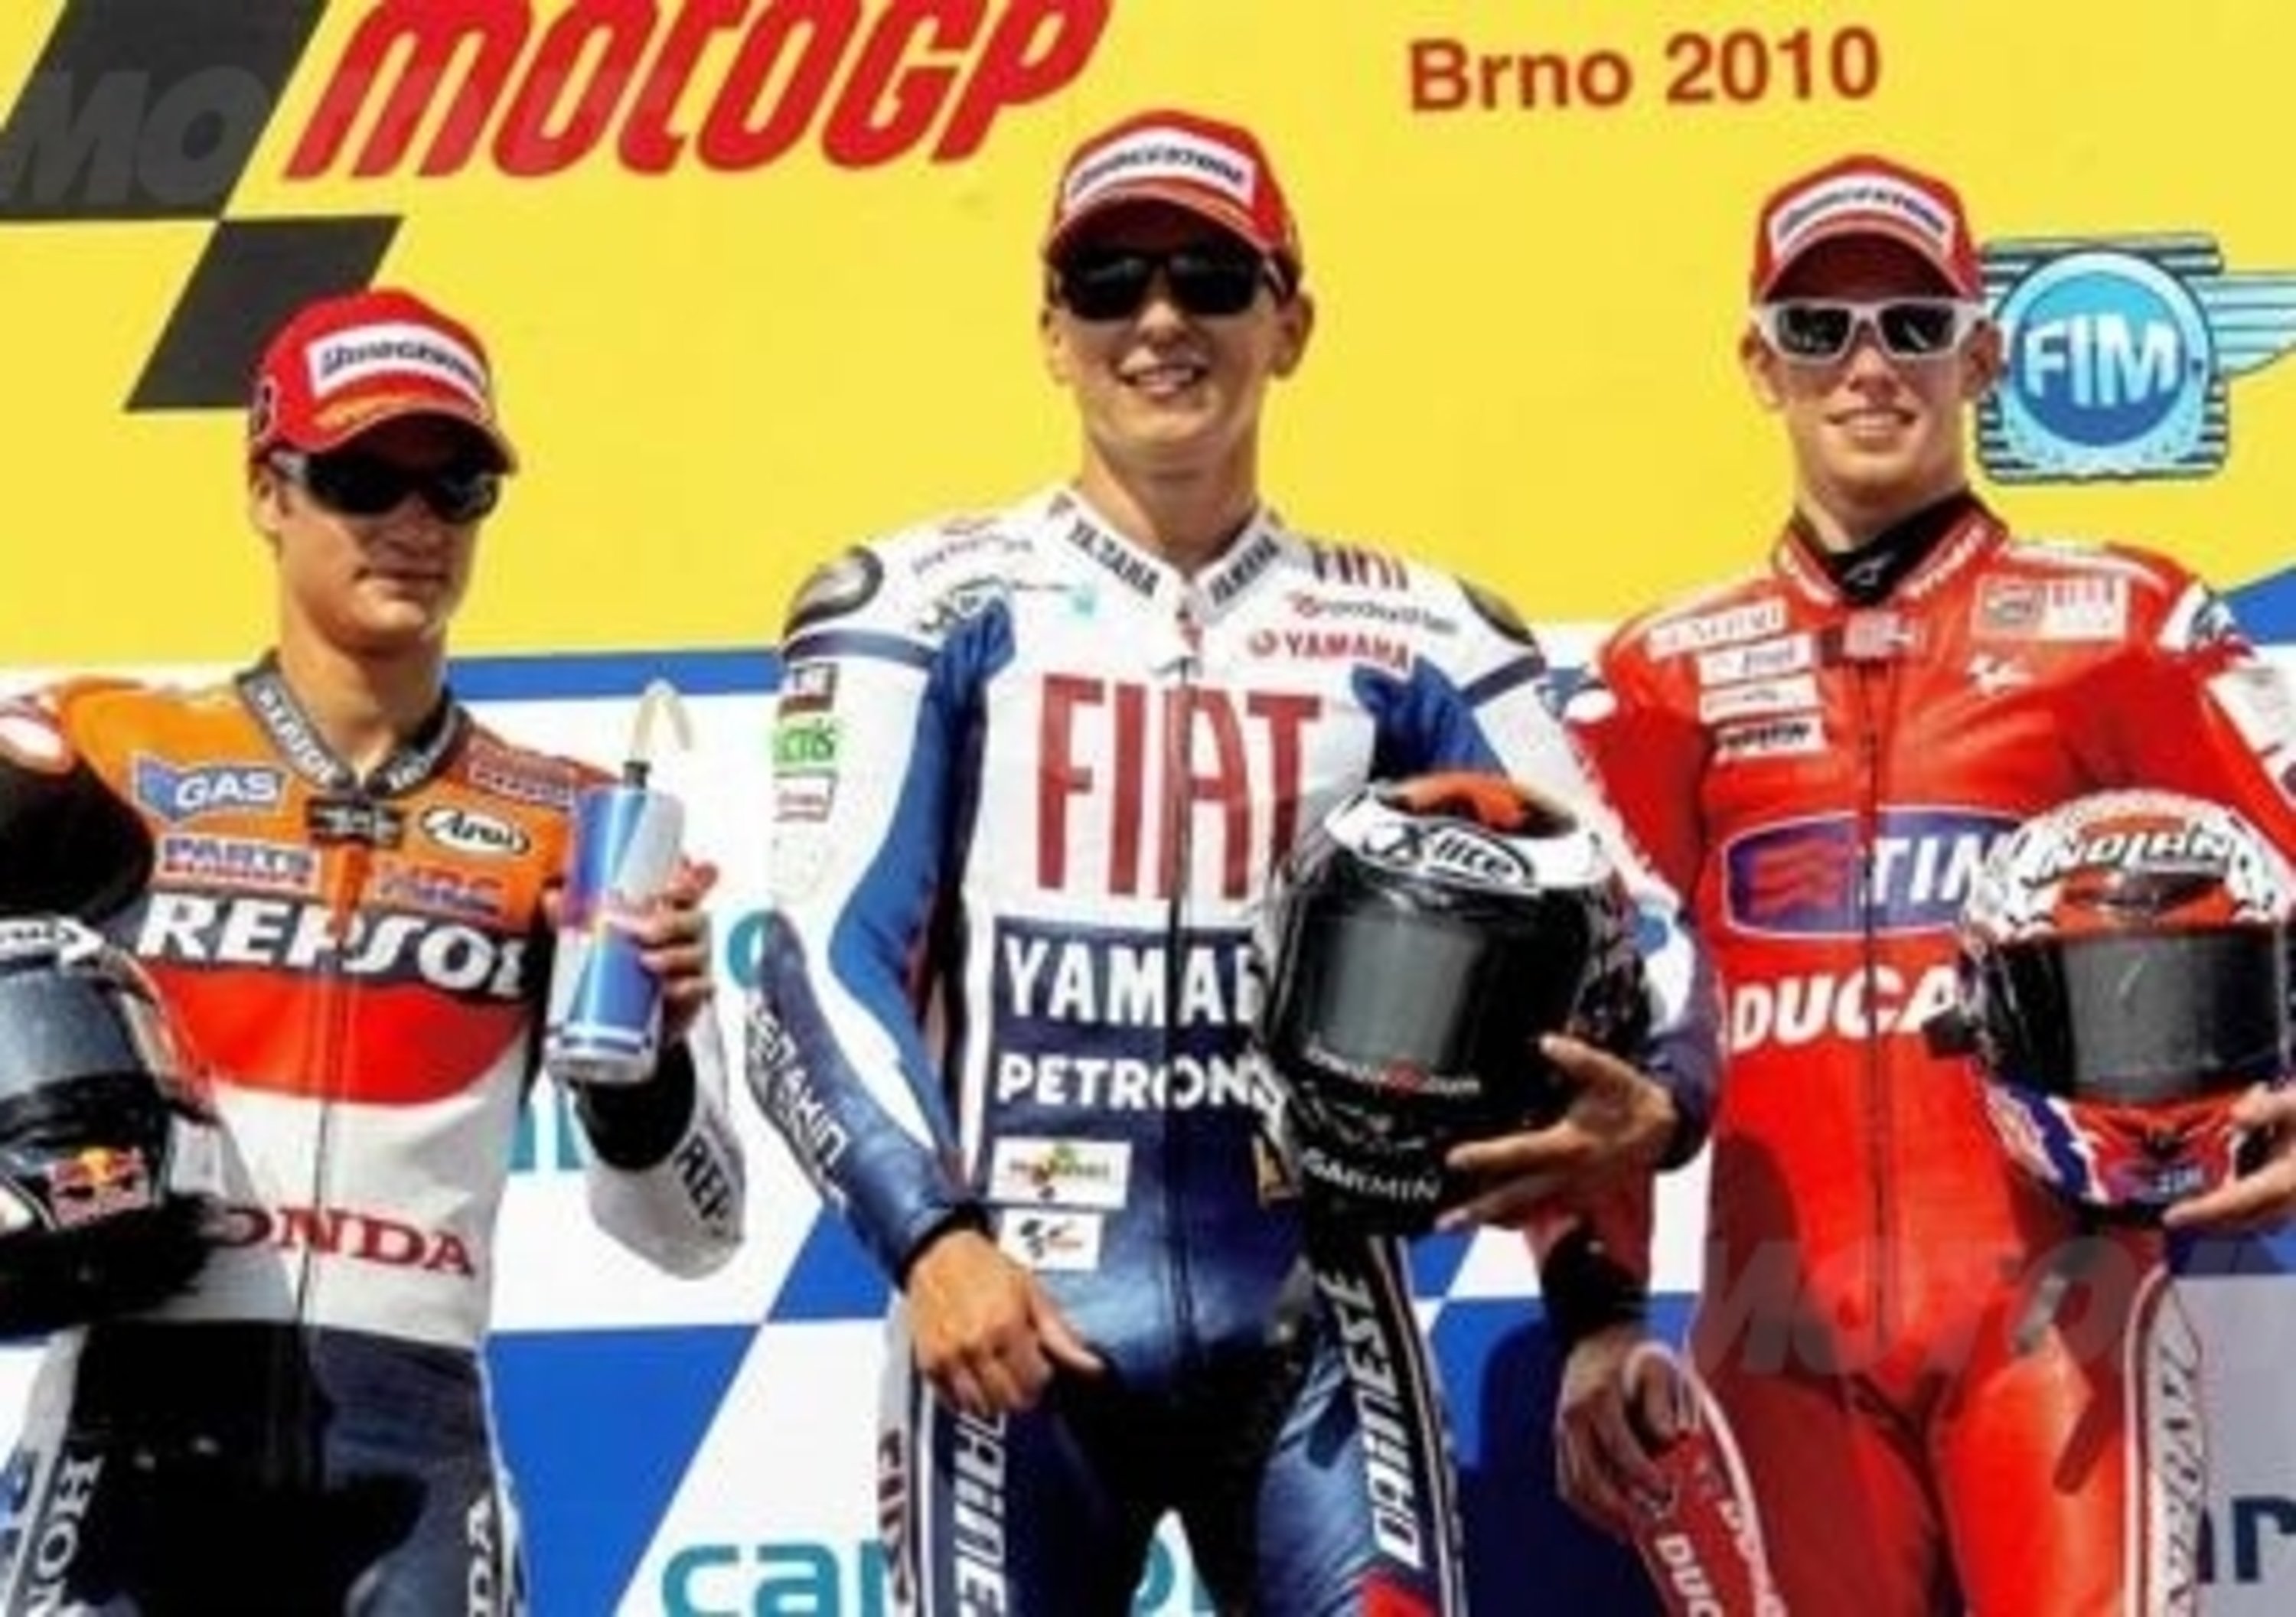 Lorenzo vince il GP di Brno. Rossi quinto